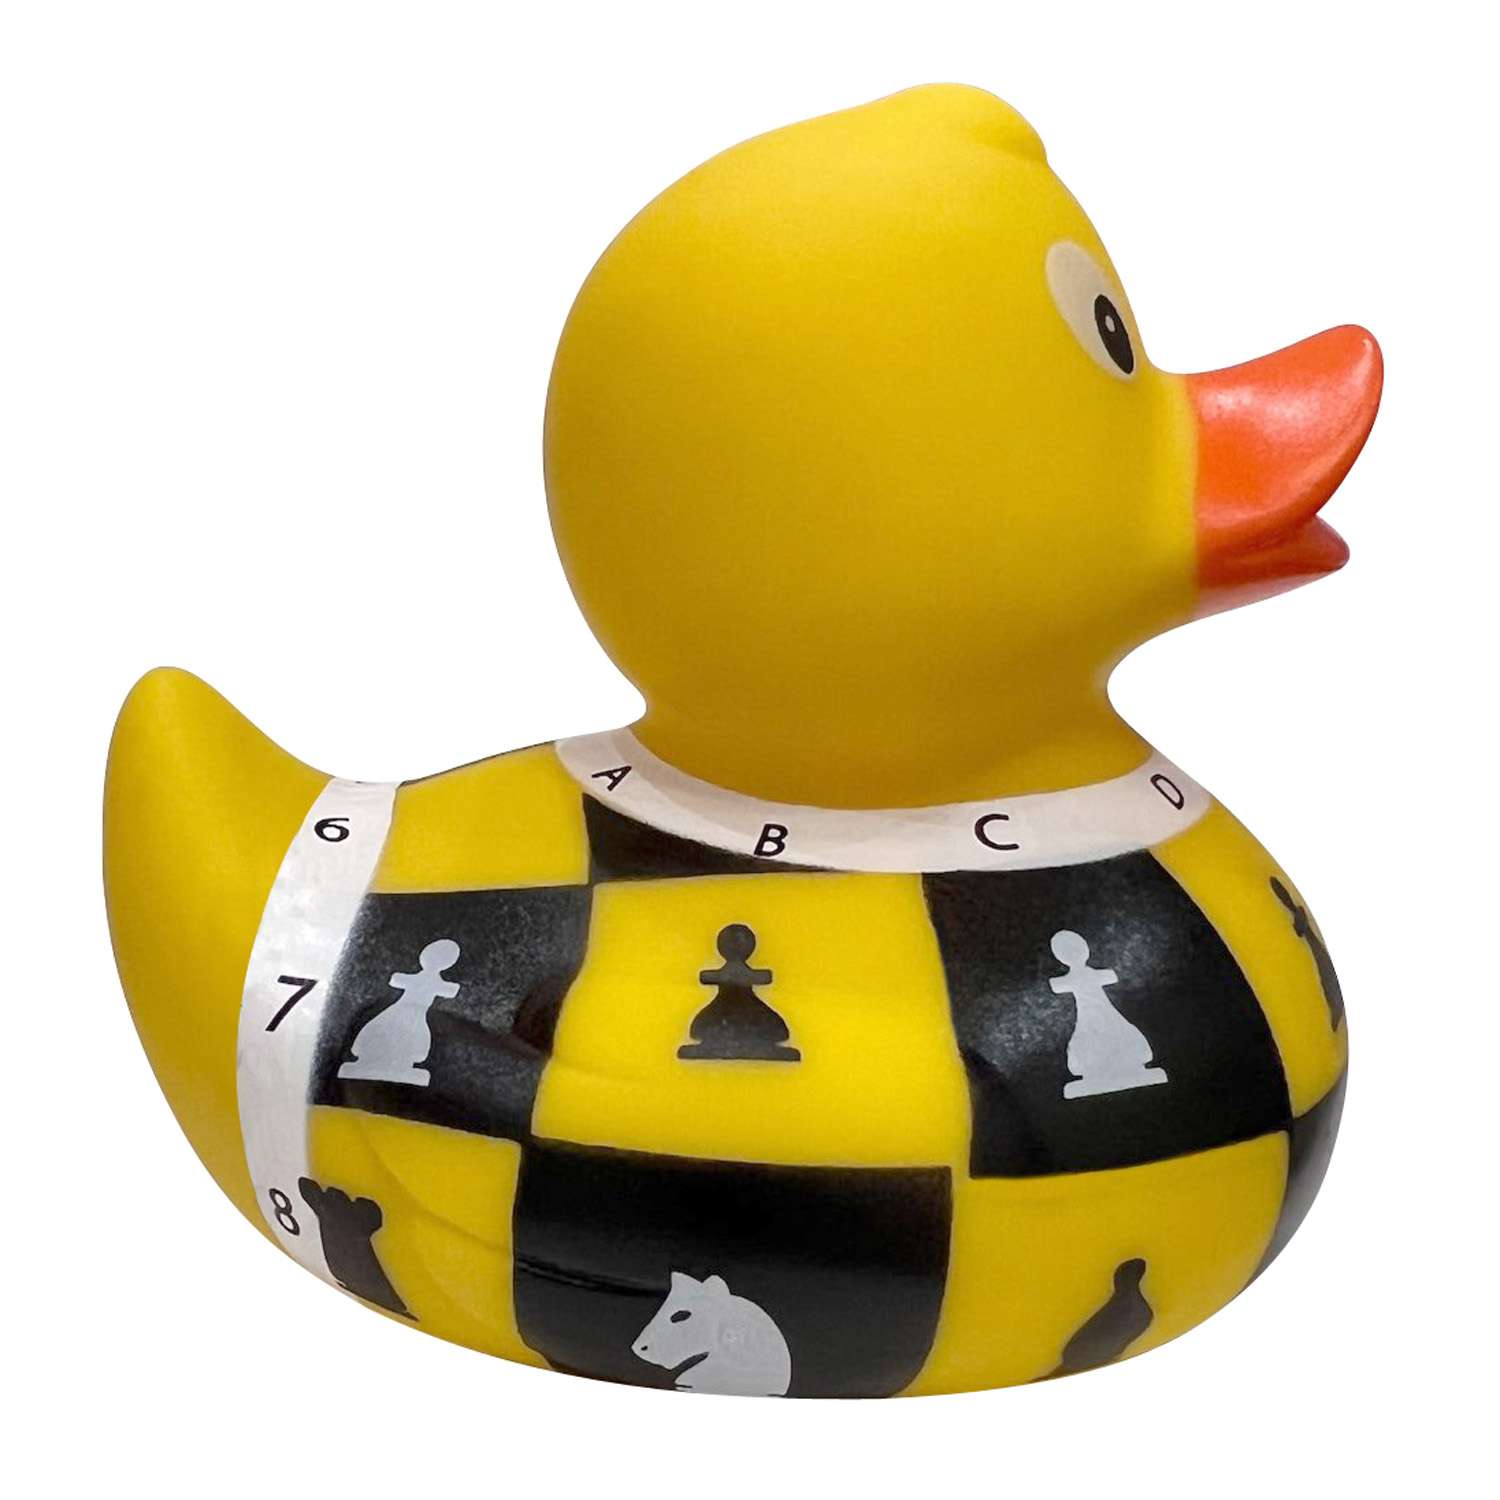 Игрушка для ванны сувенир Funny ducks Шахматы уточка 1319 - фото 4